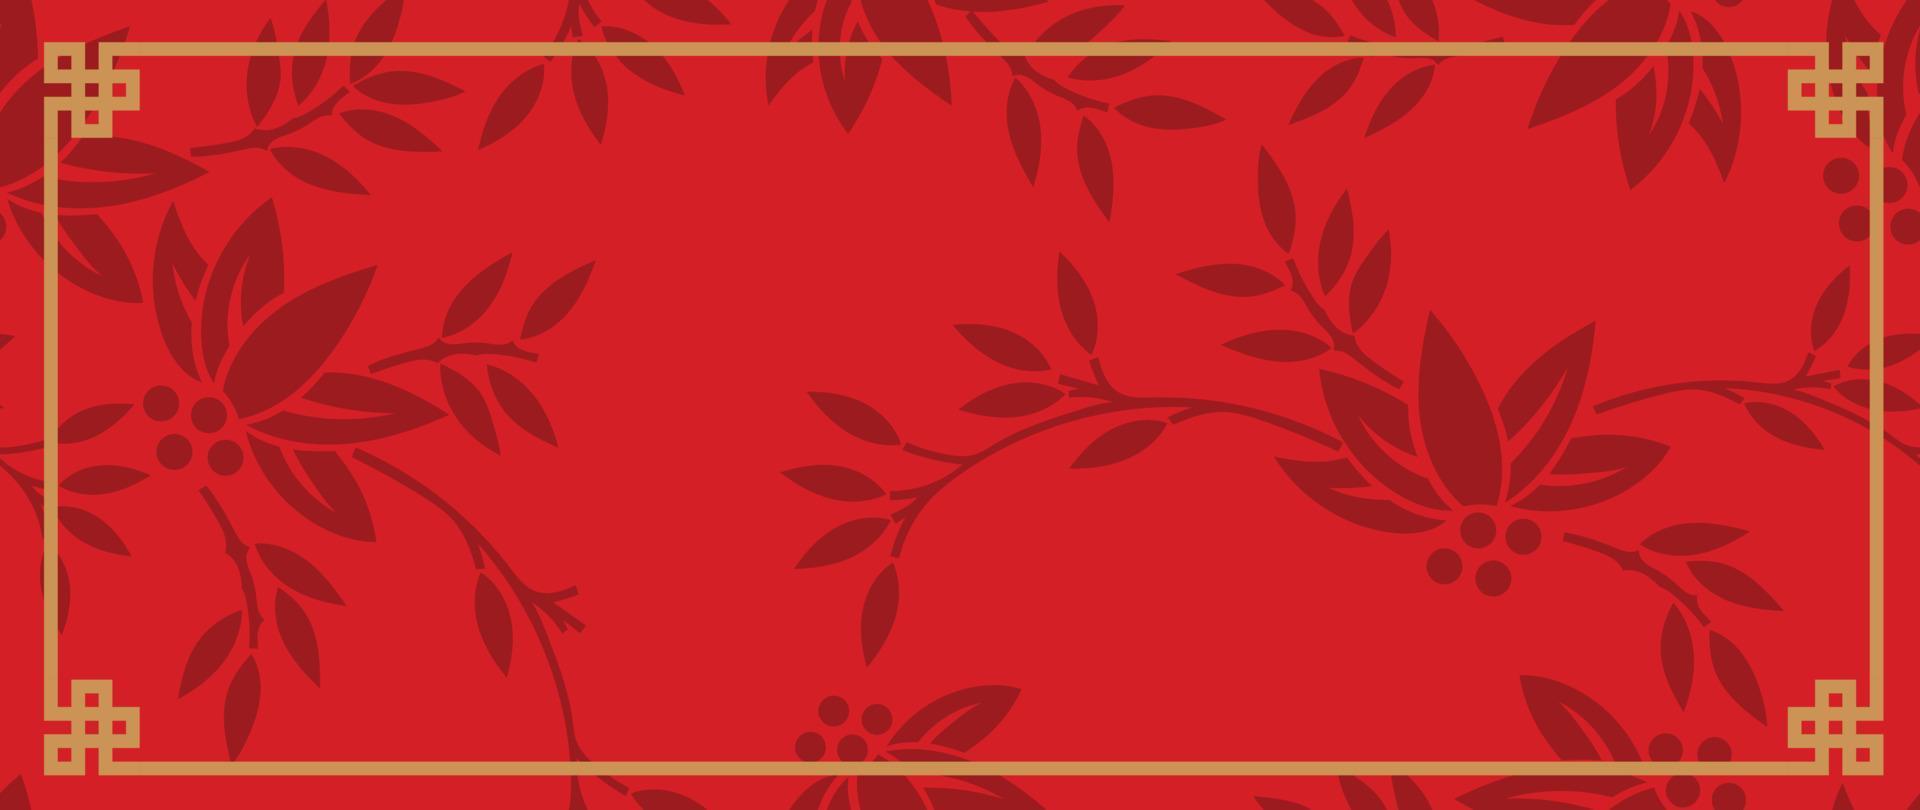 feliz ano novo chinês vetor de fundo vermelho. padrão tradicional chinês e japonês com formas geométricas, flor, folha. papel de parede estilo oriental para impressão, tecido, capa, banner, decoração.